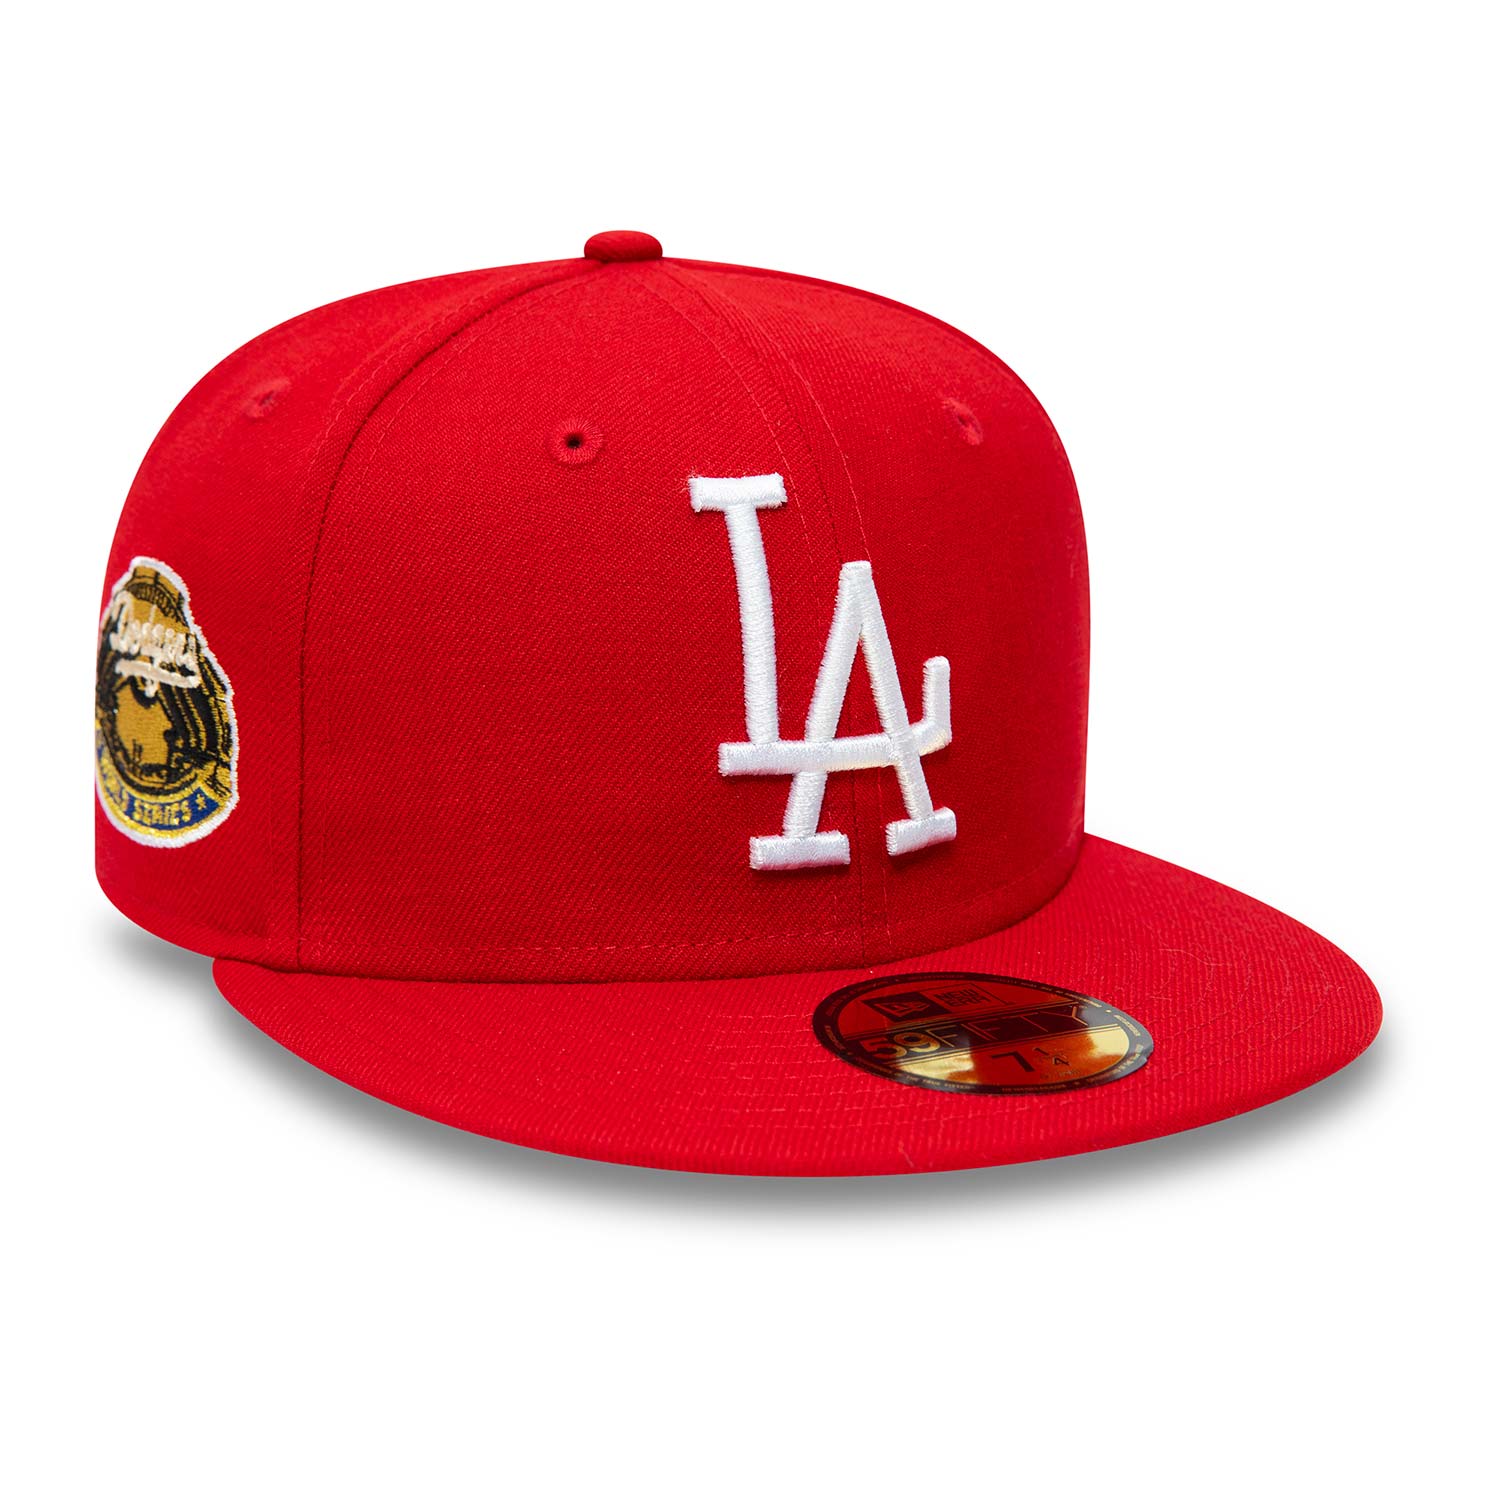 Official New Era LA Dodgers Red 59FIFTY Cap B8595_12 B8595_12 | New Era ...